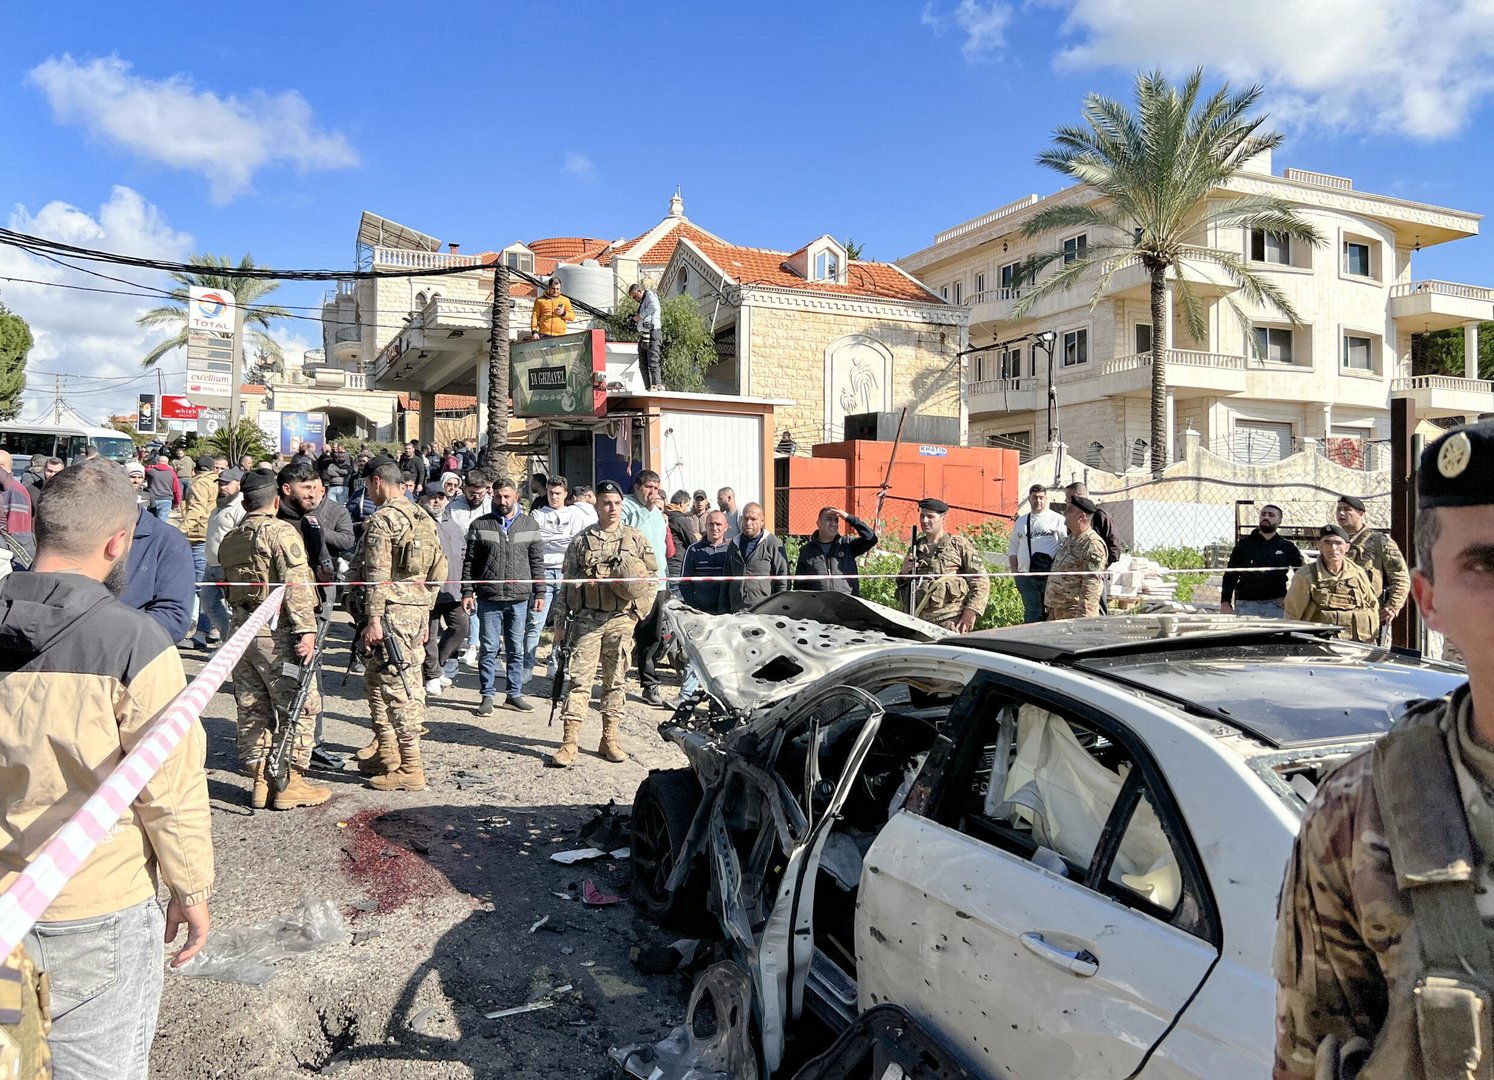 Senior Hamas Official Survives Israeli Strike In Lebanon: Report